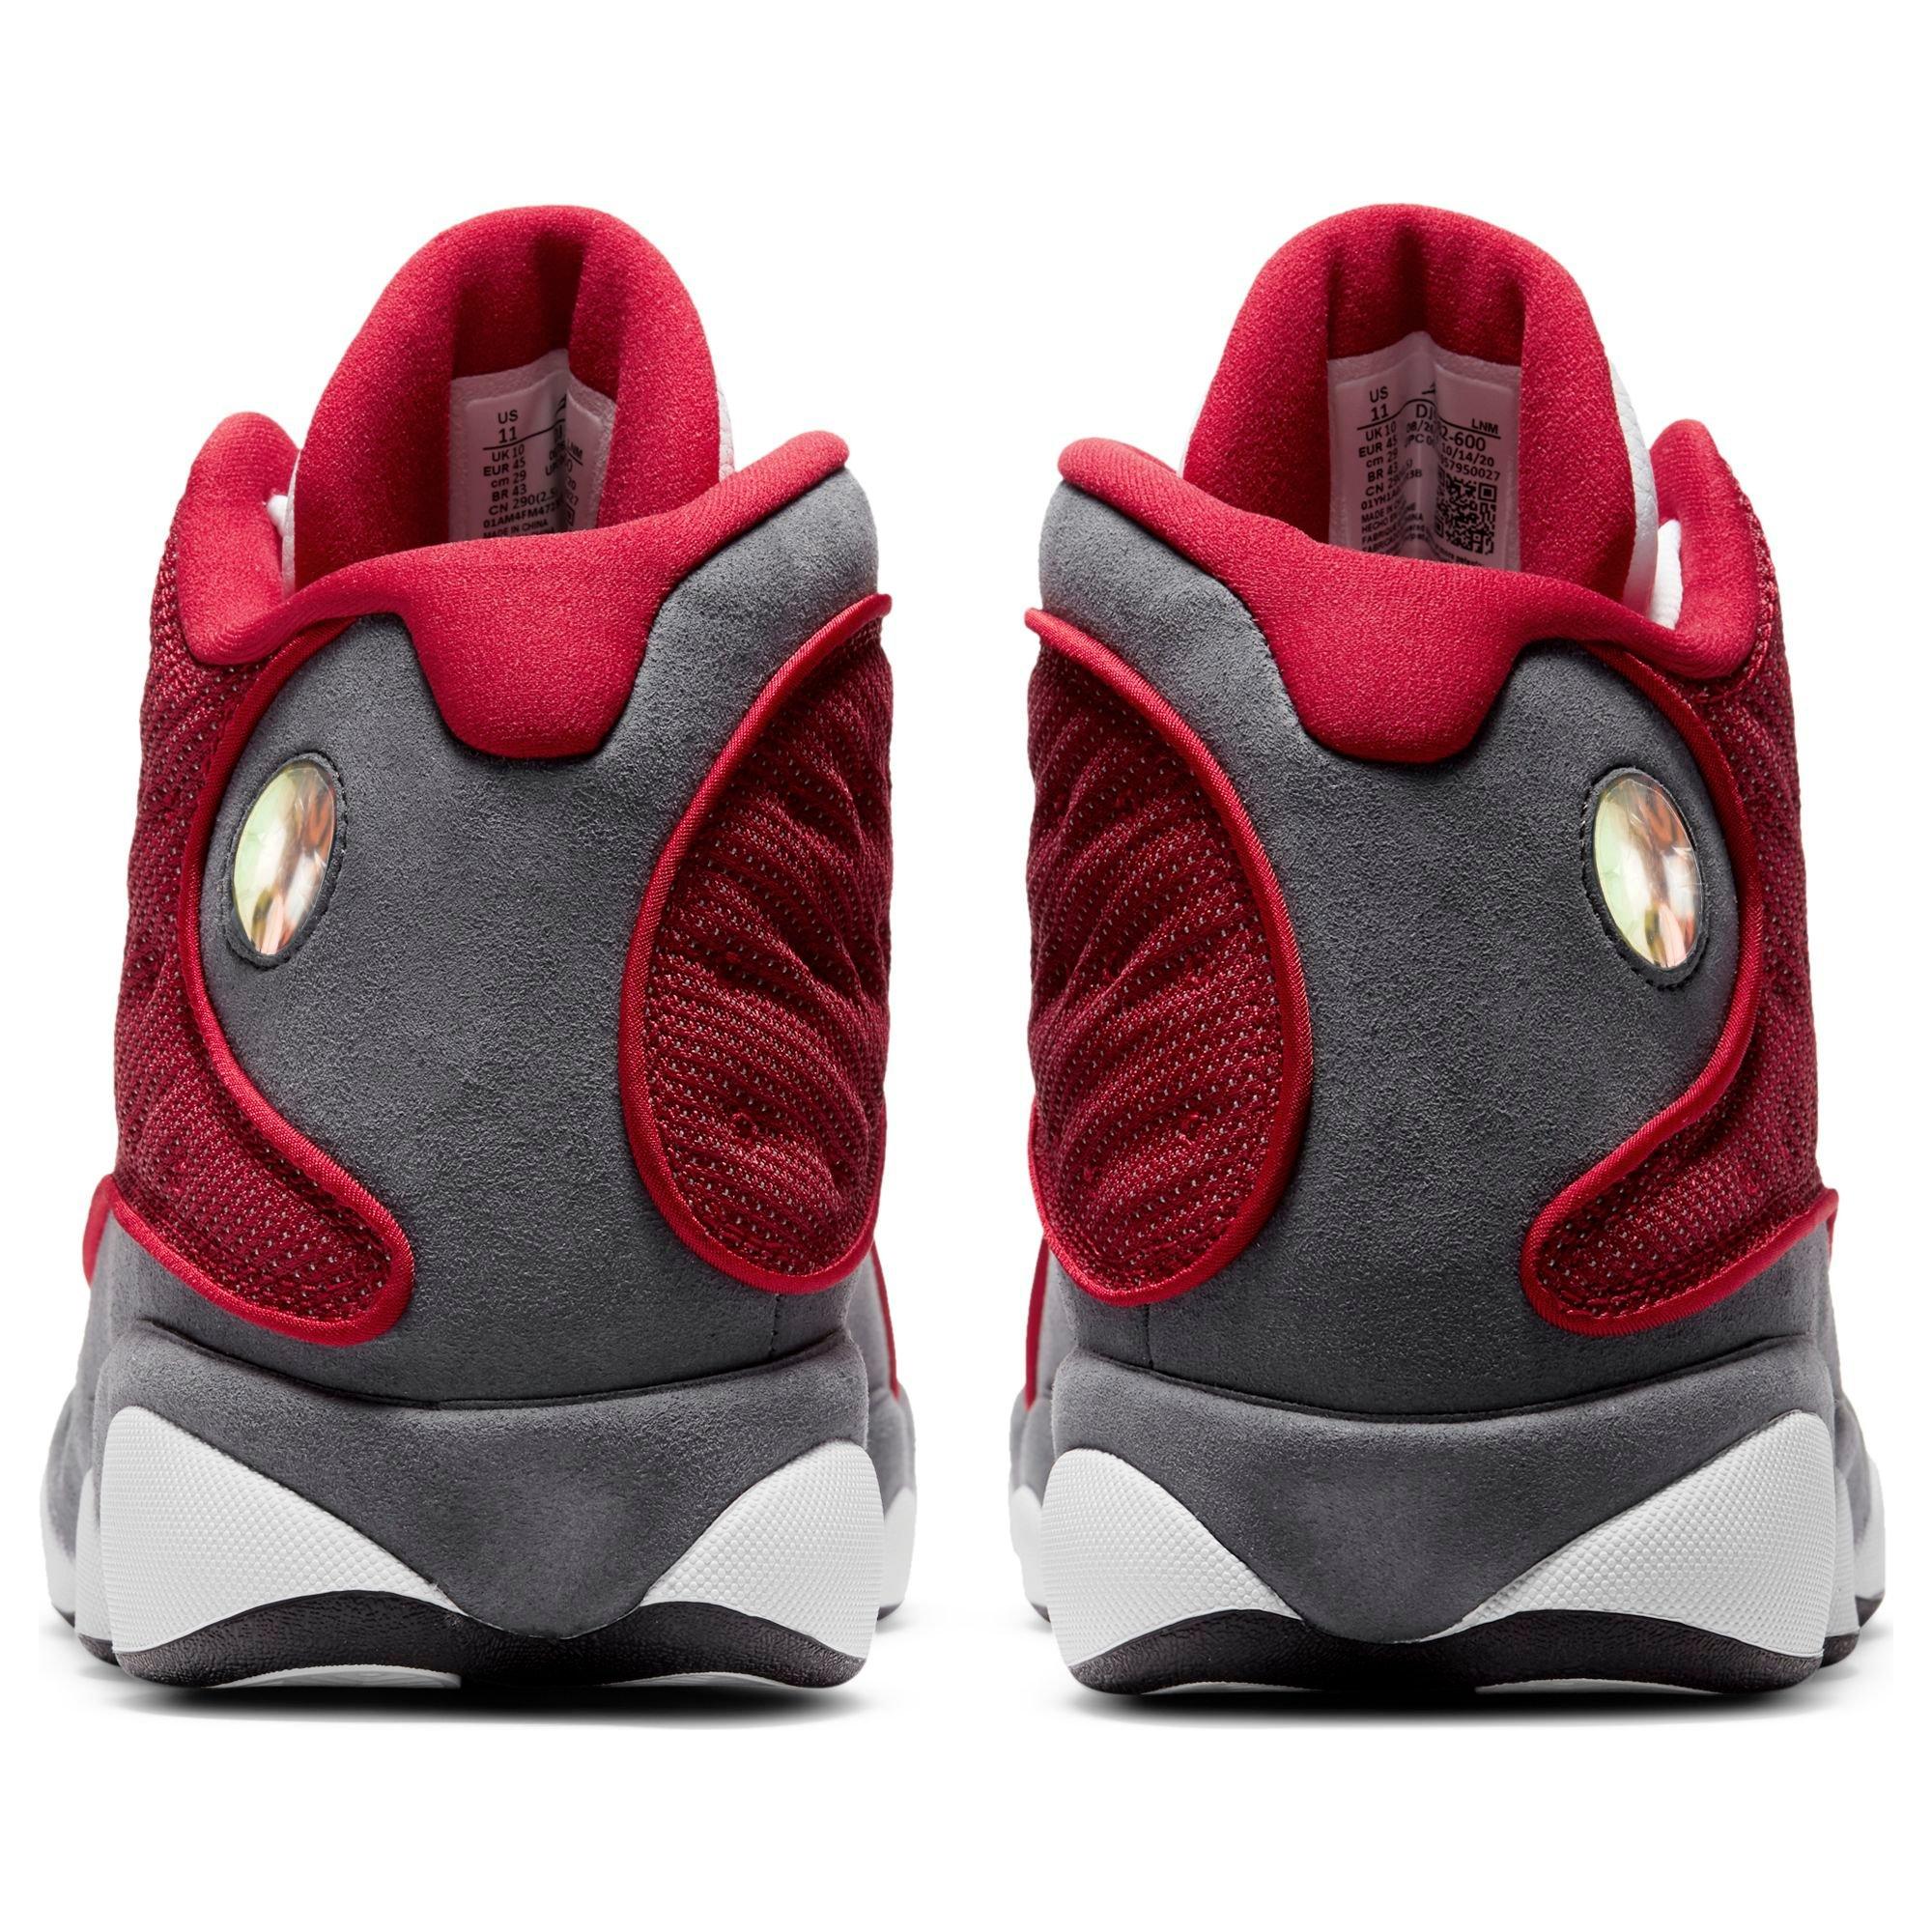 Jordan 13 Retro Gym Red/Flint/White Men's Shoe - Hibbett